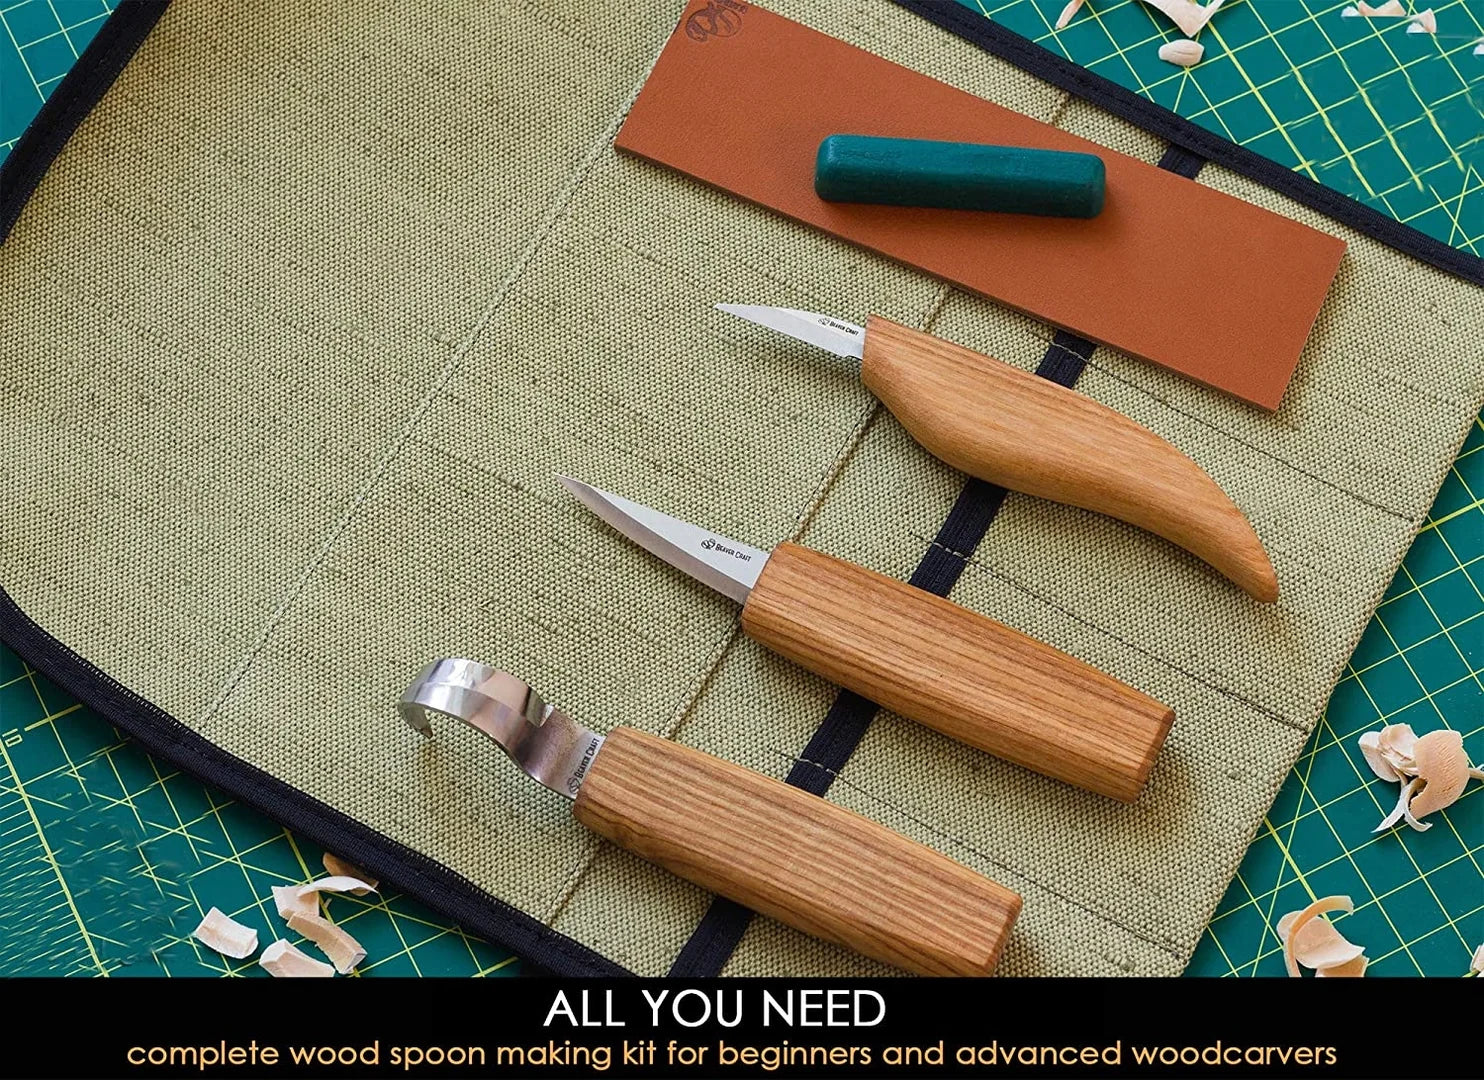 Best small whittling knife for beginners - BeaverCraft – BeaverCraft Tools